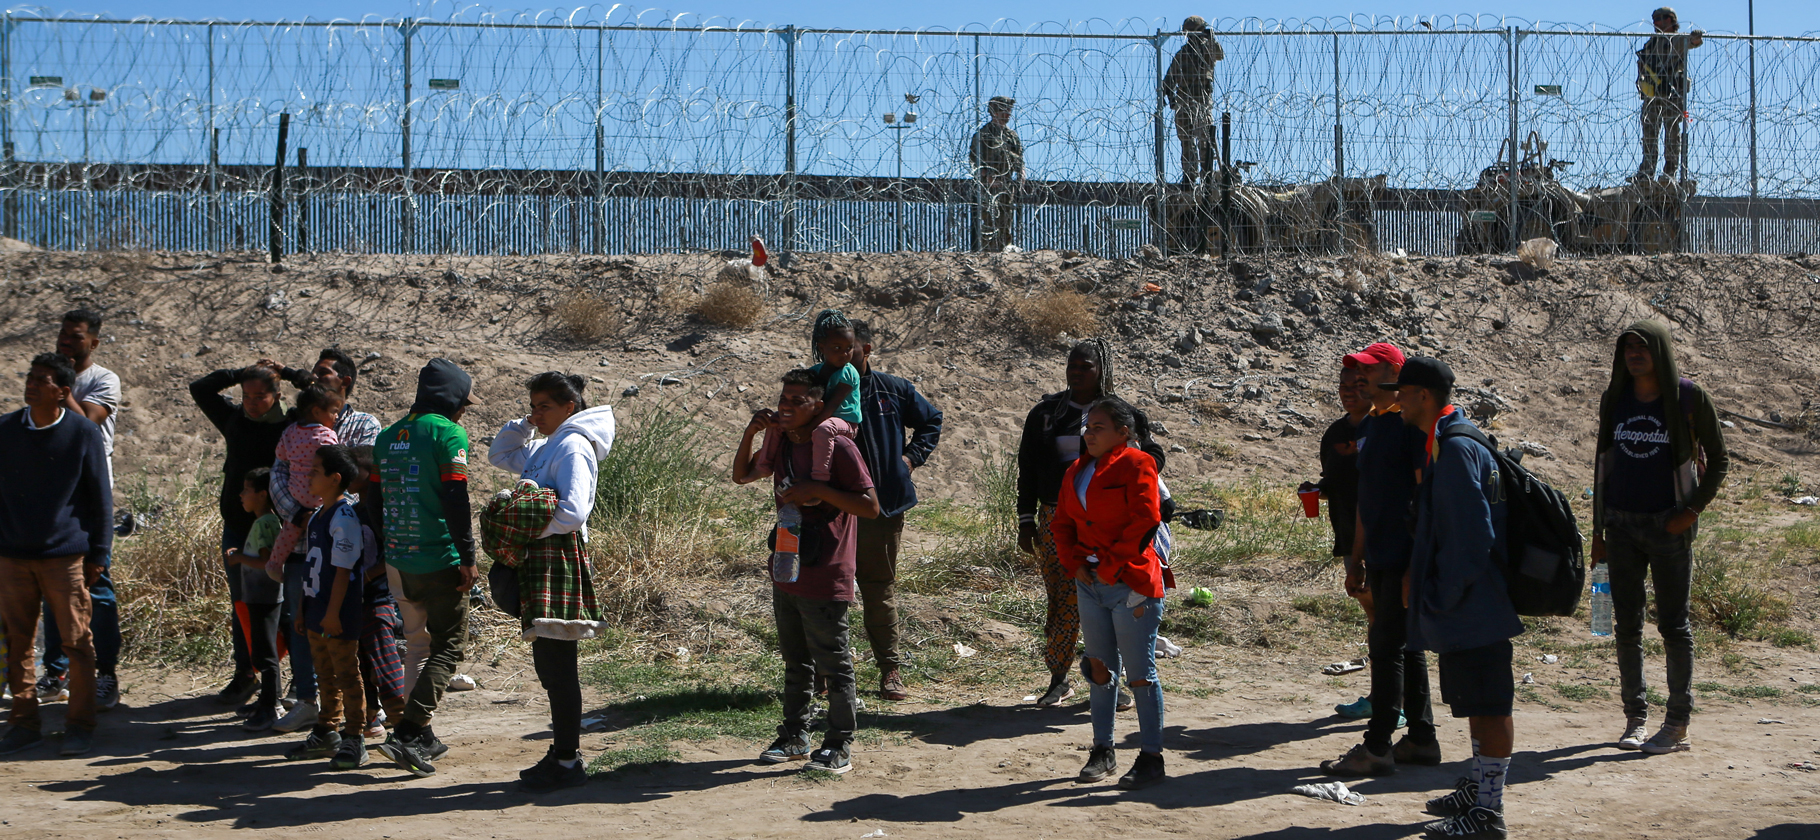 США временно запретили получать убежище на границе с Мексикой